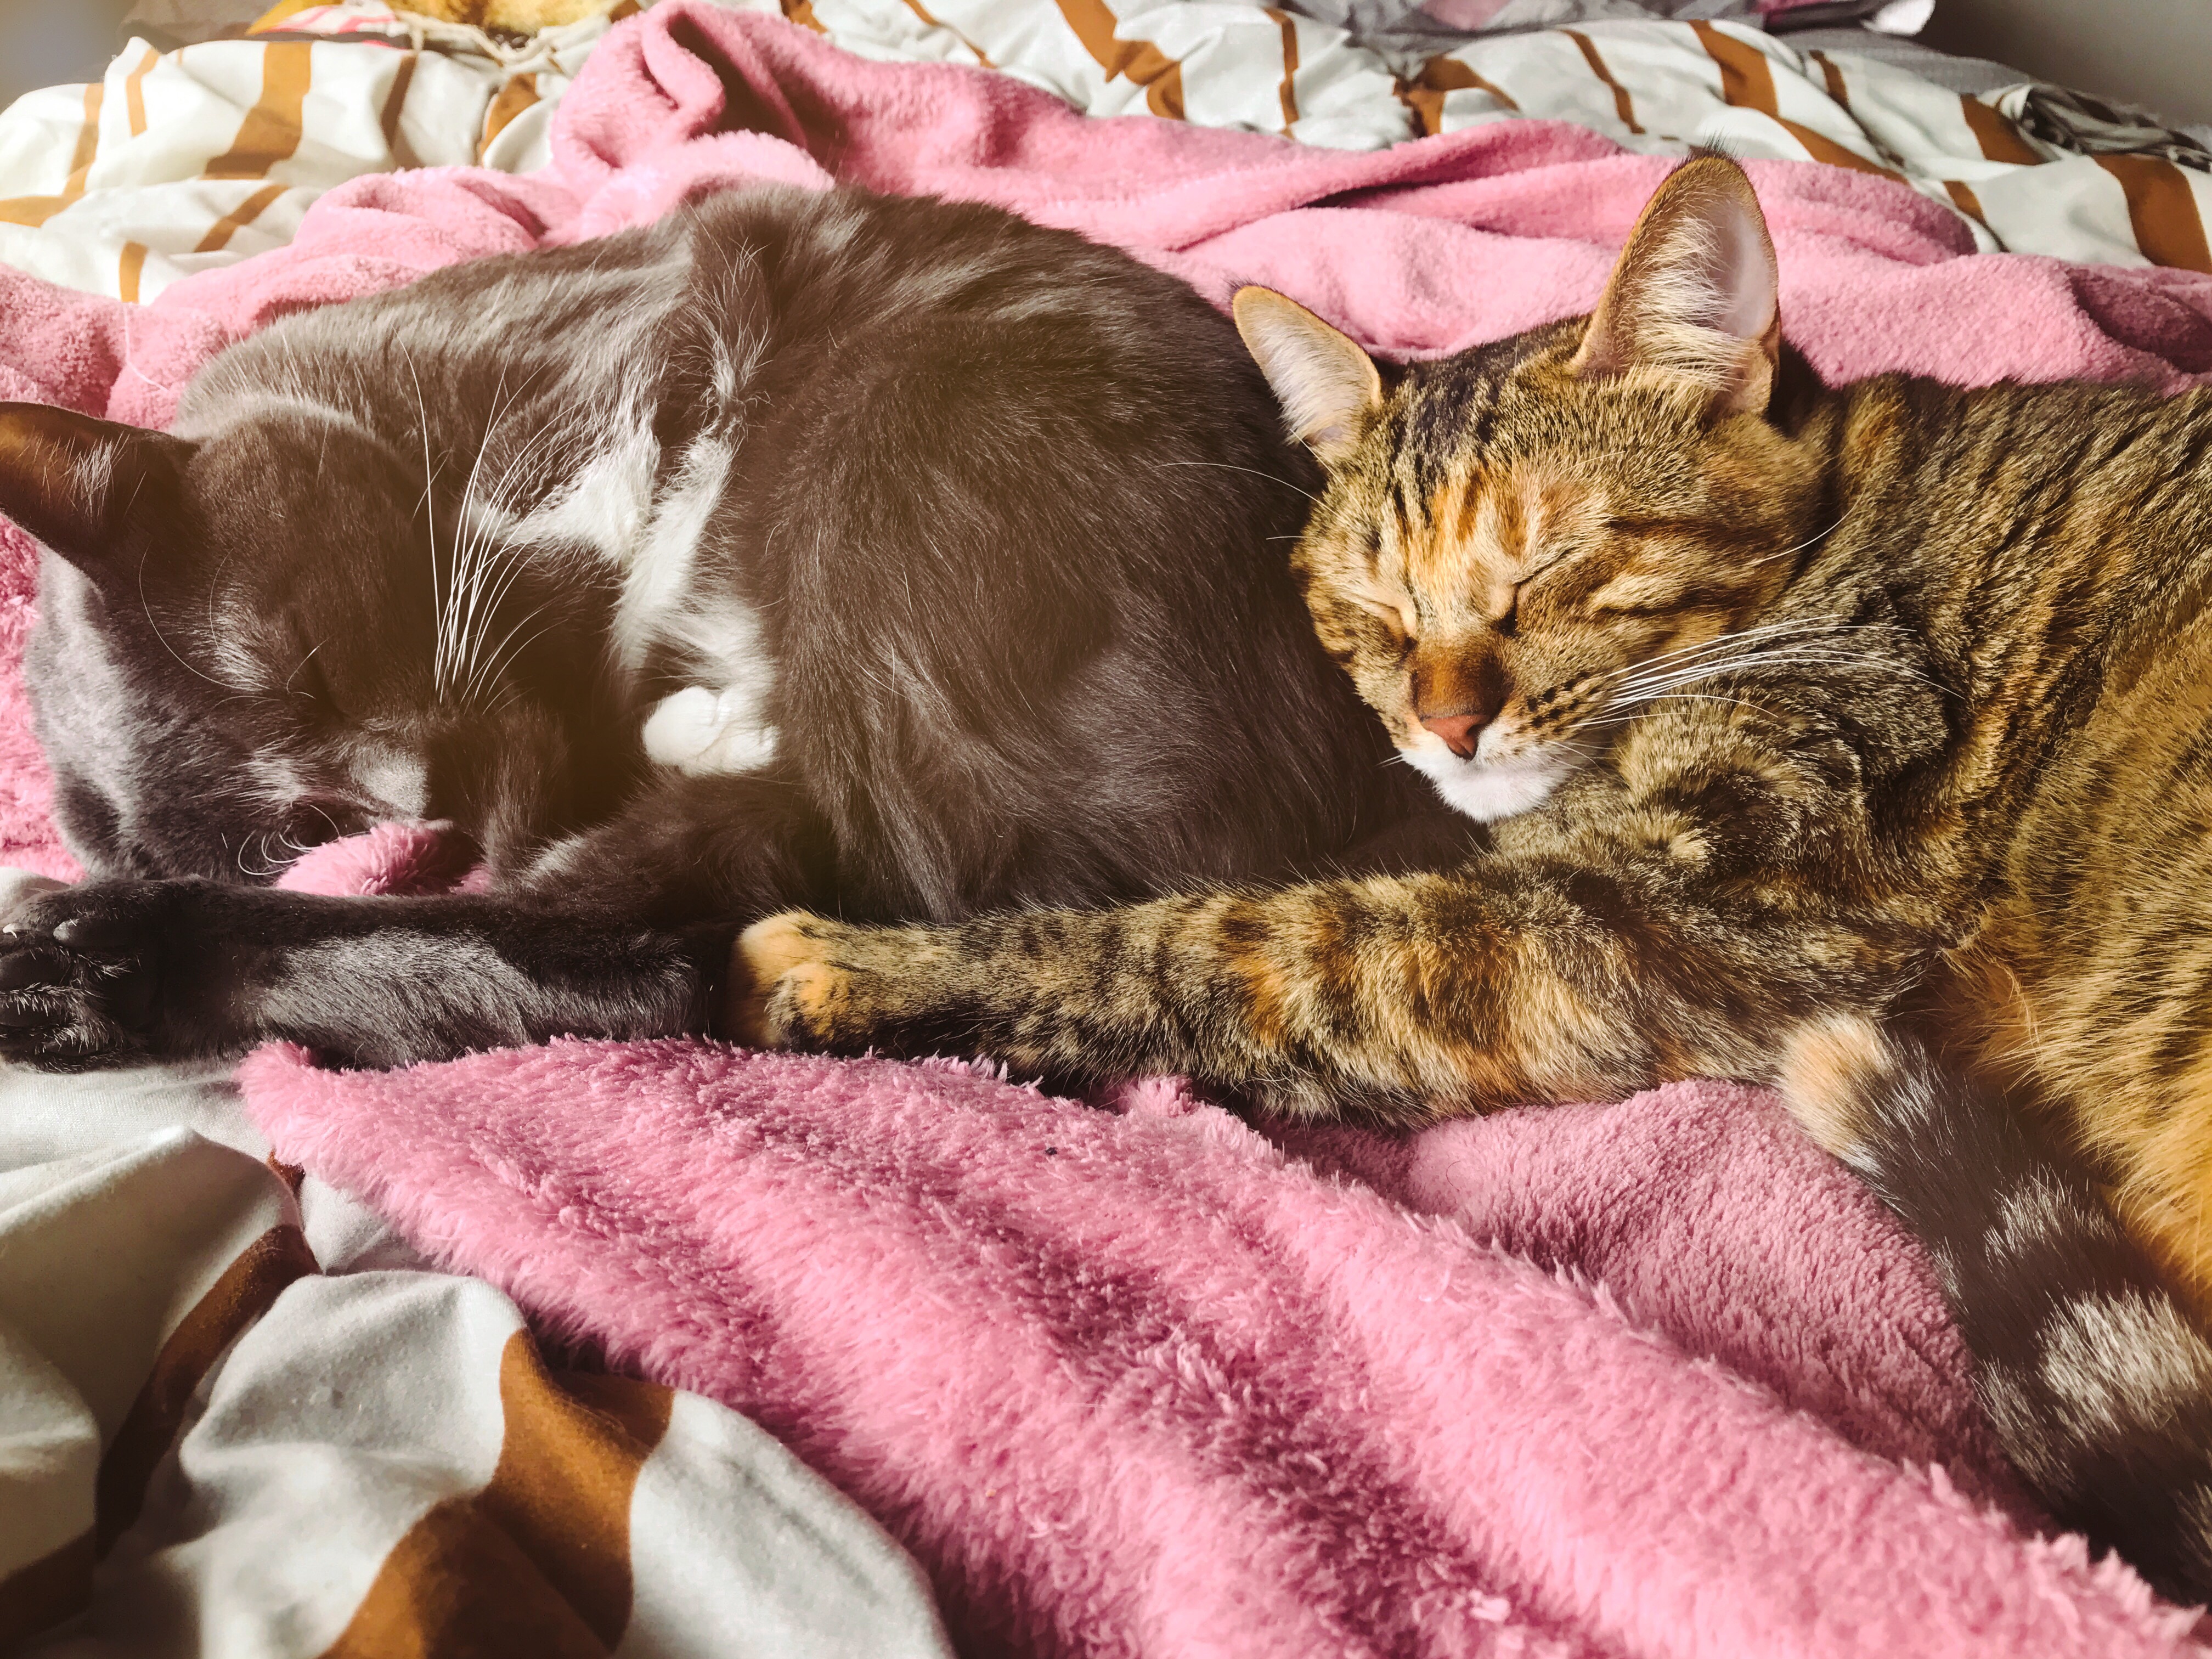 Fotos das minhas bbs (Nina e Zoe) dormindo, porque foto de gato é sempre bom!